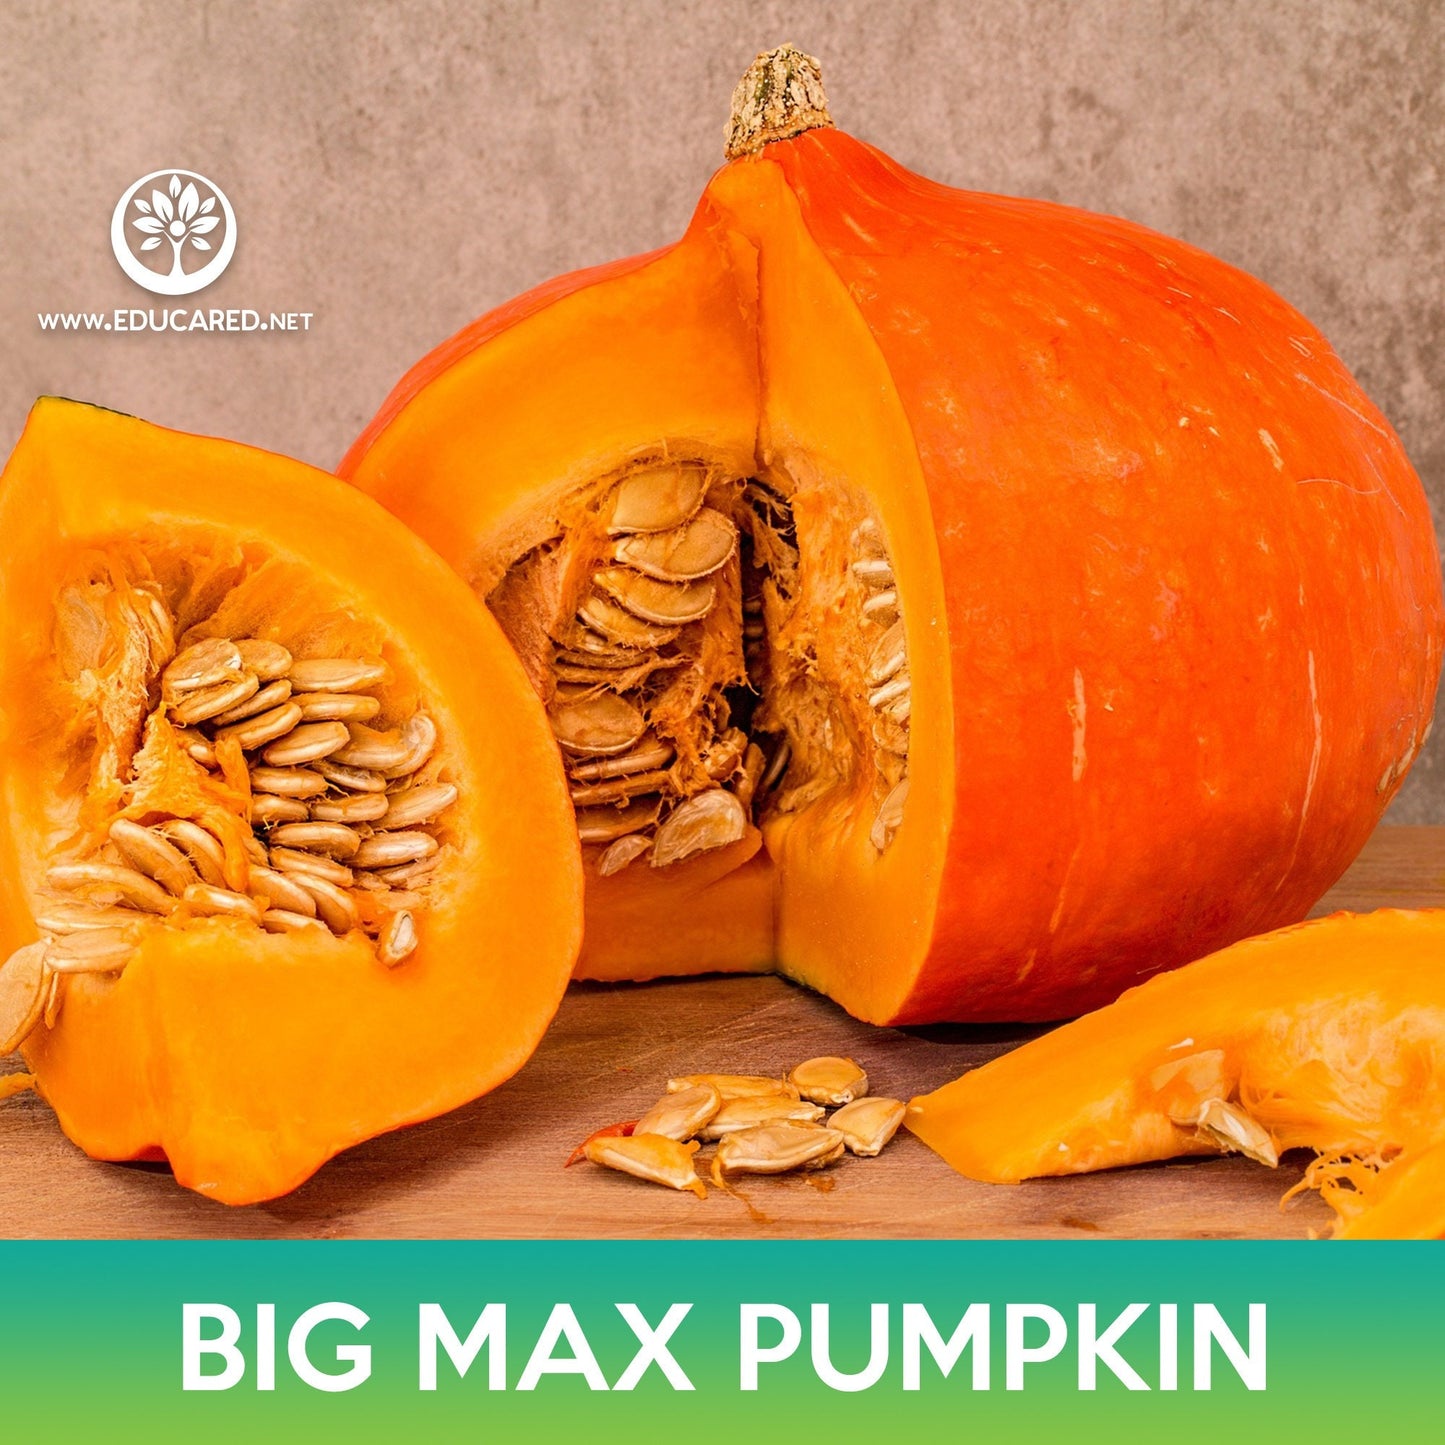 Big Max Pumpkin Seeds, Cucurbita maxima